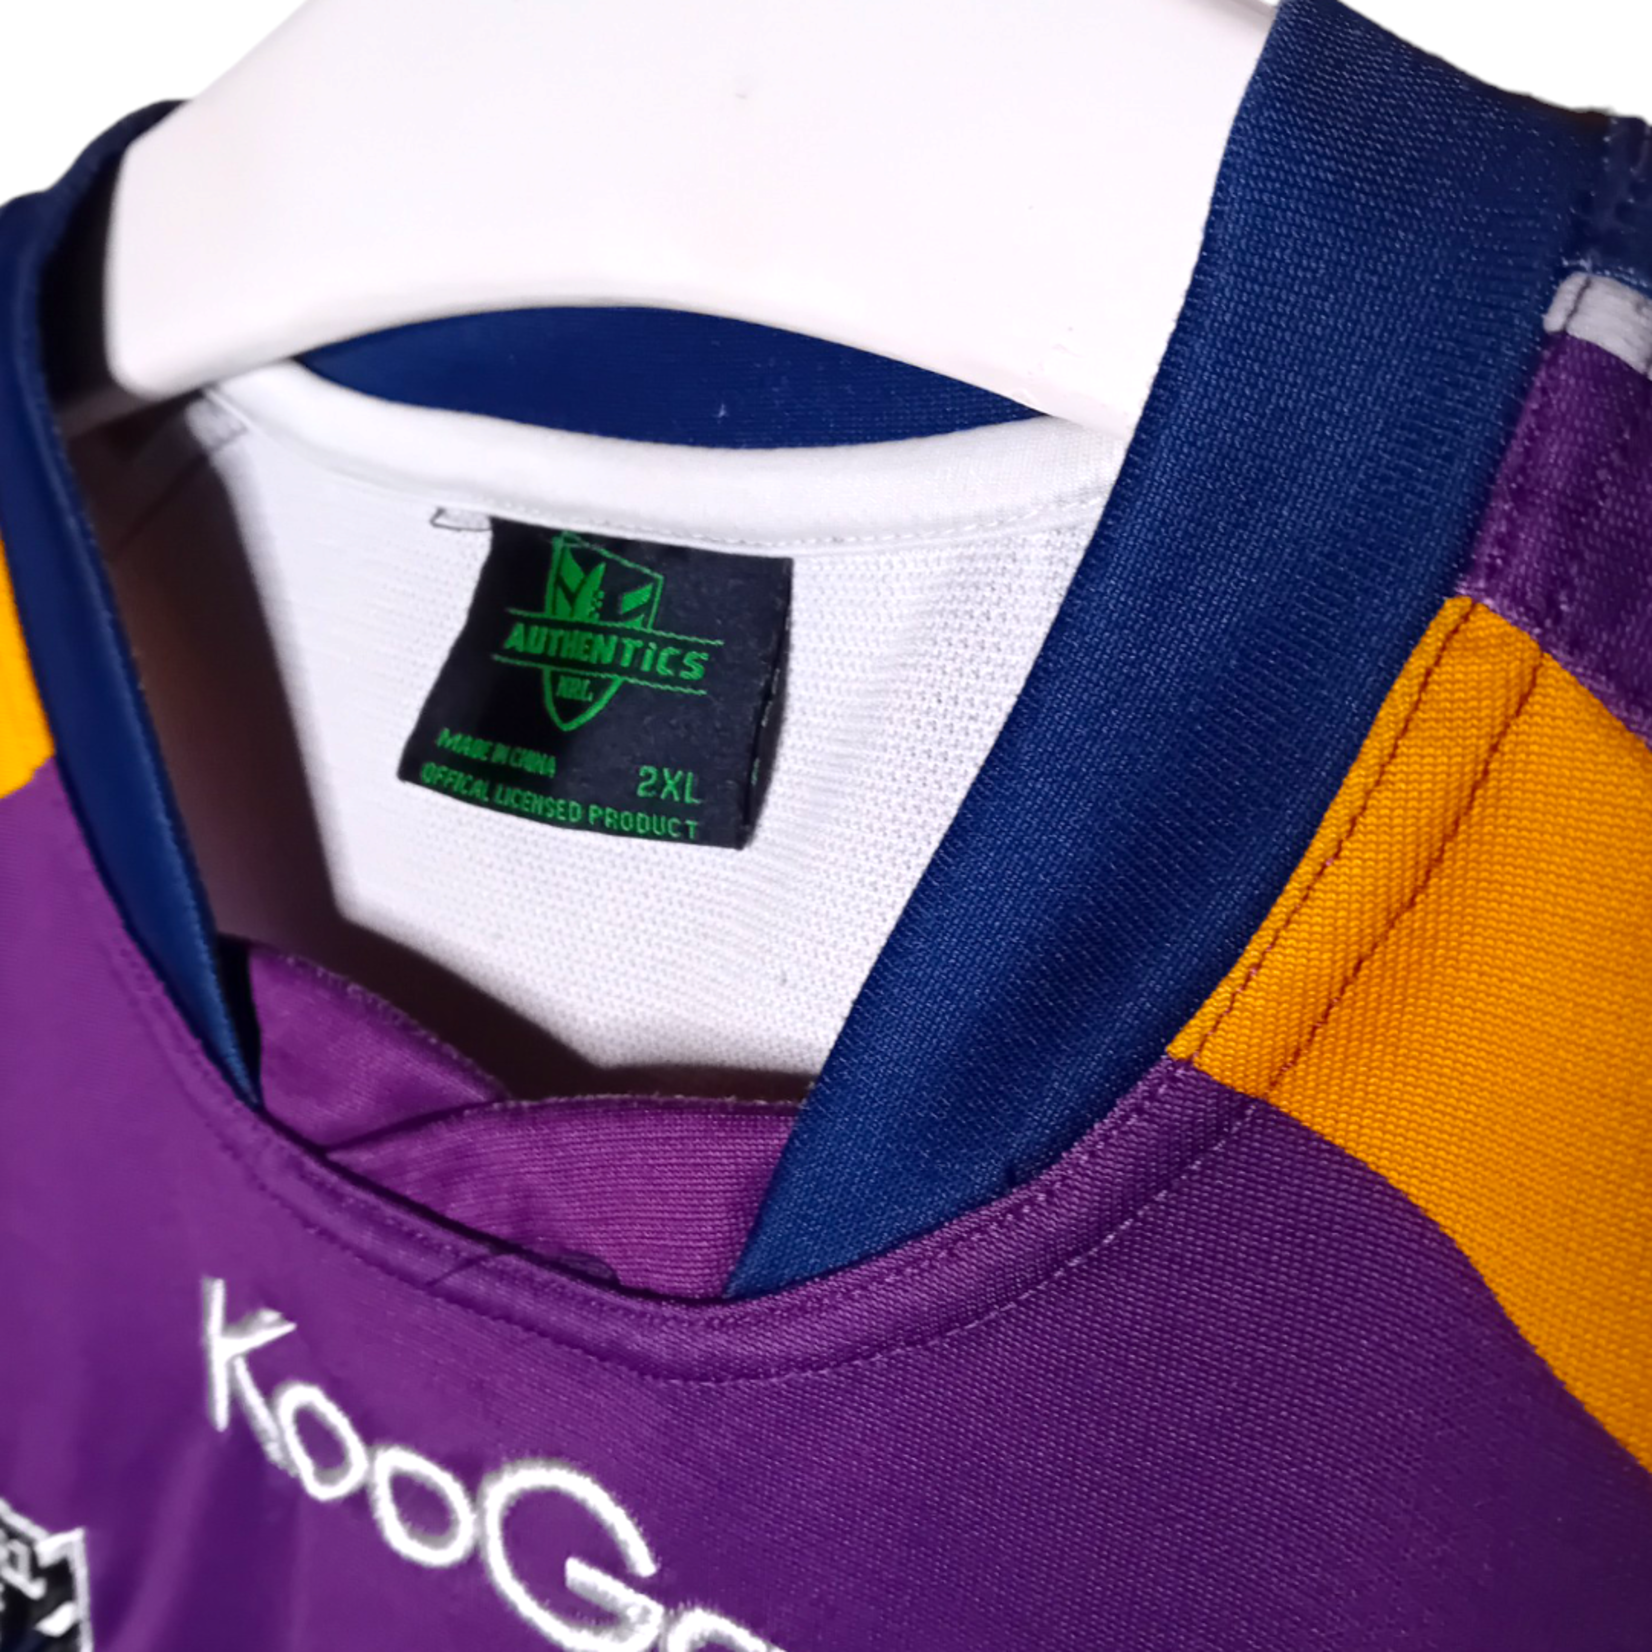 Kooga Original Kooga vintage rugby jersey Melbourne Storm 2012